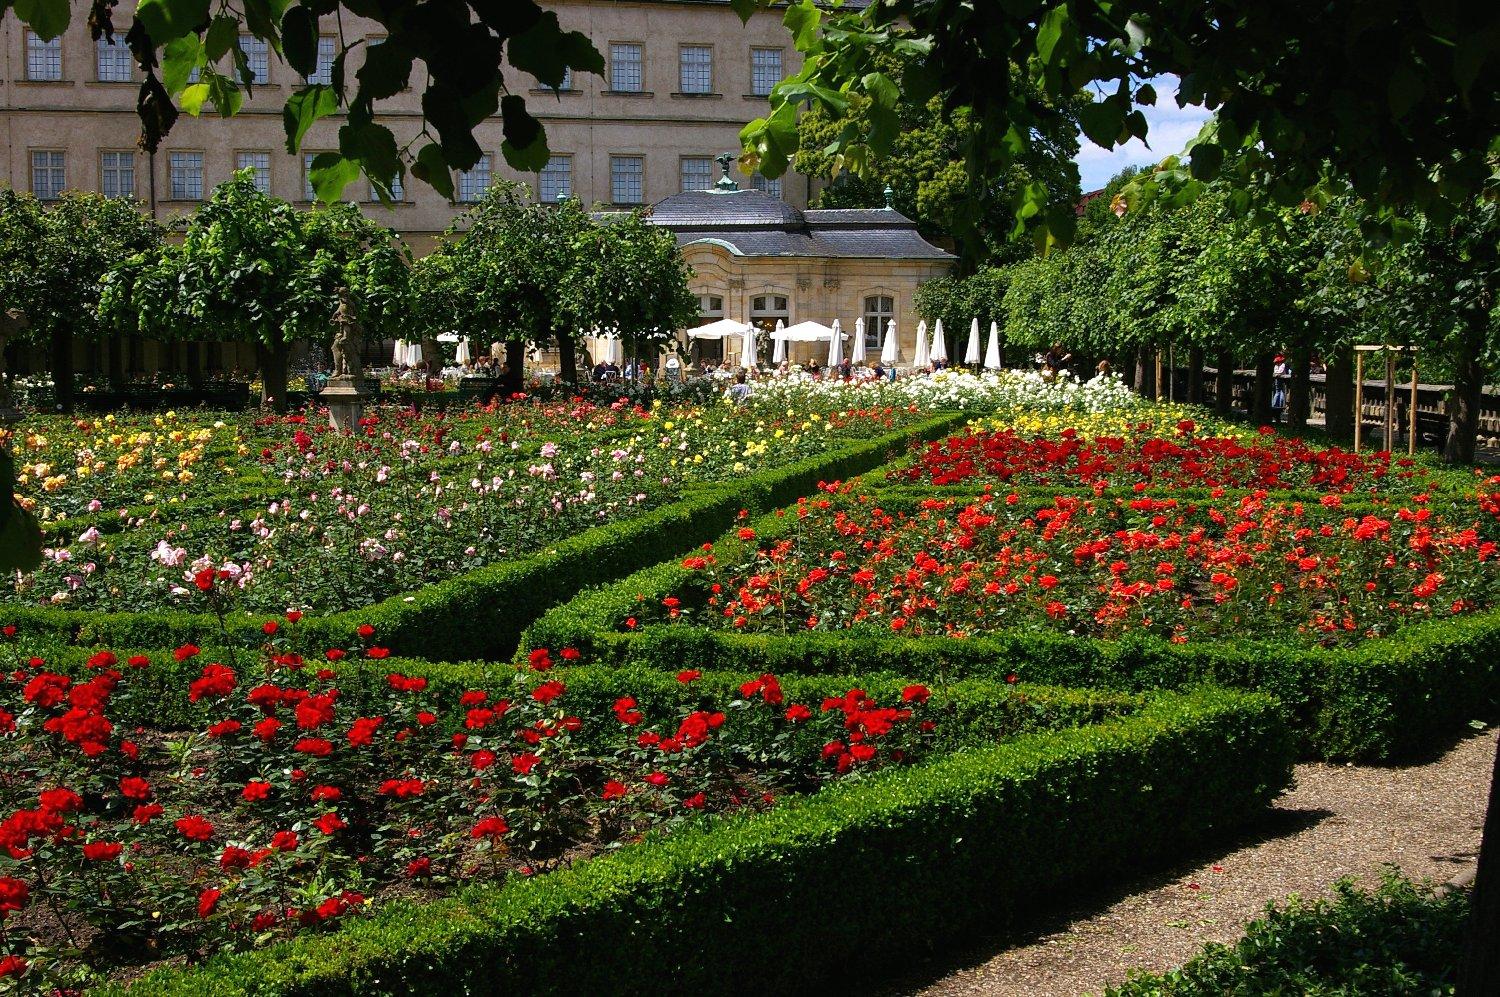 Rosengarten (Rose Garden)